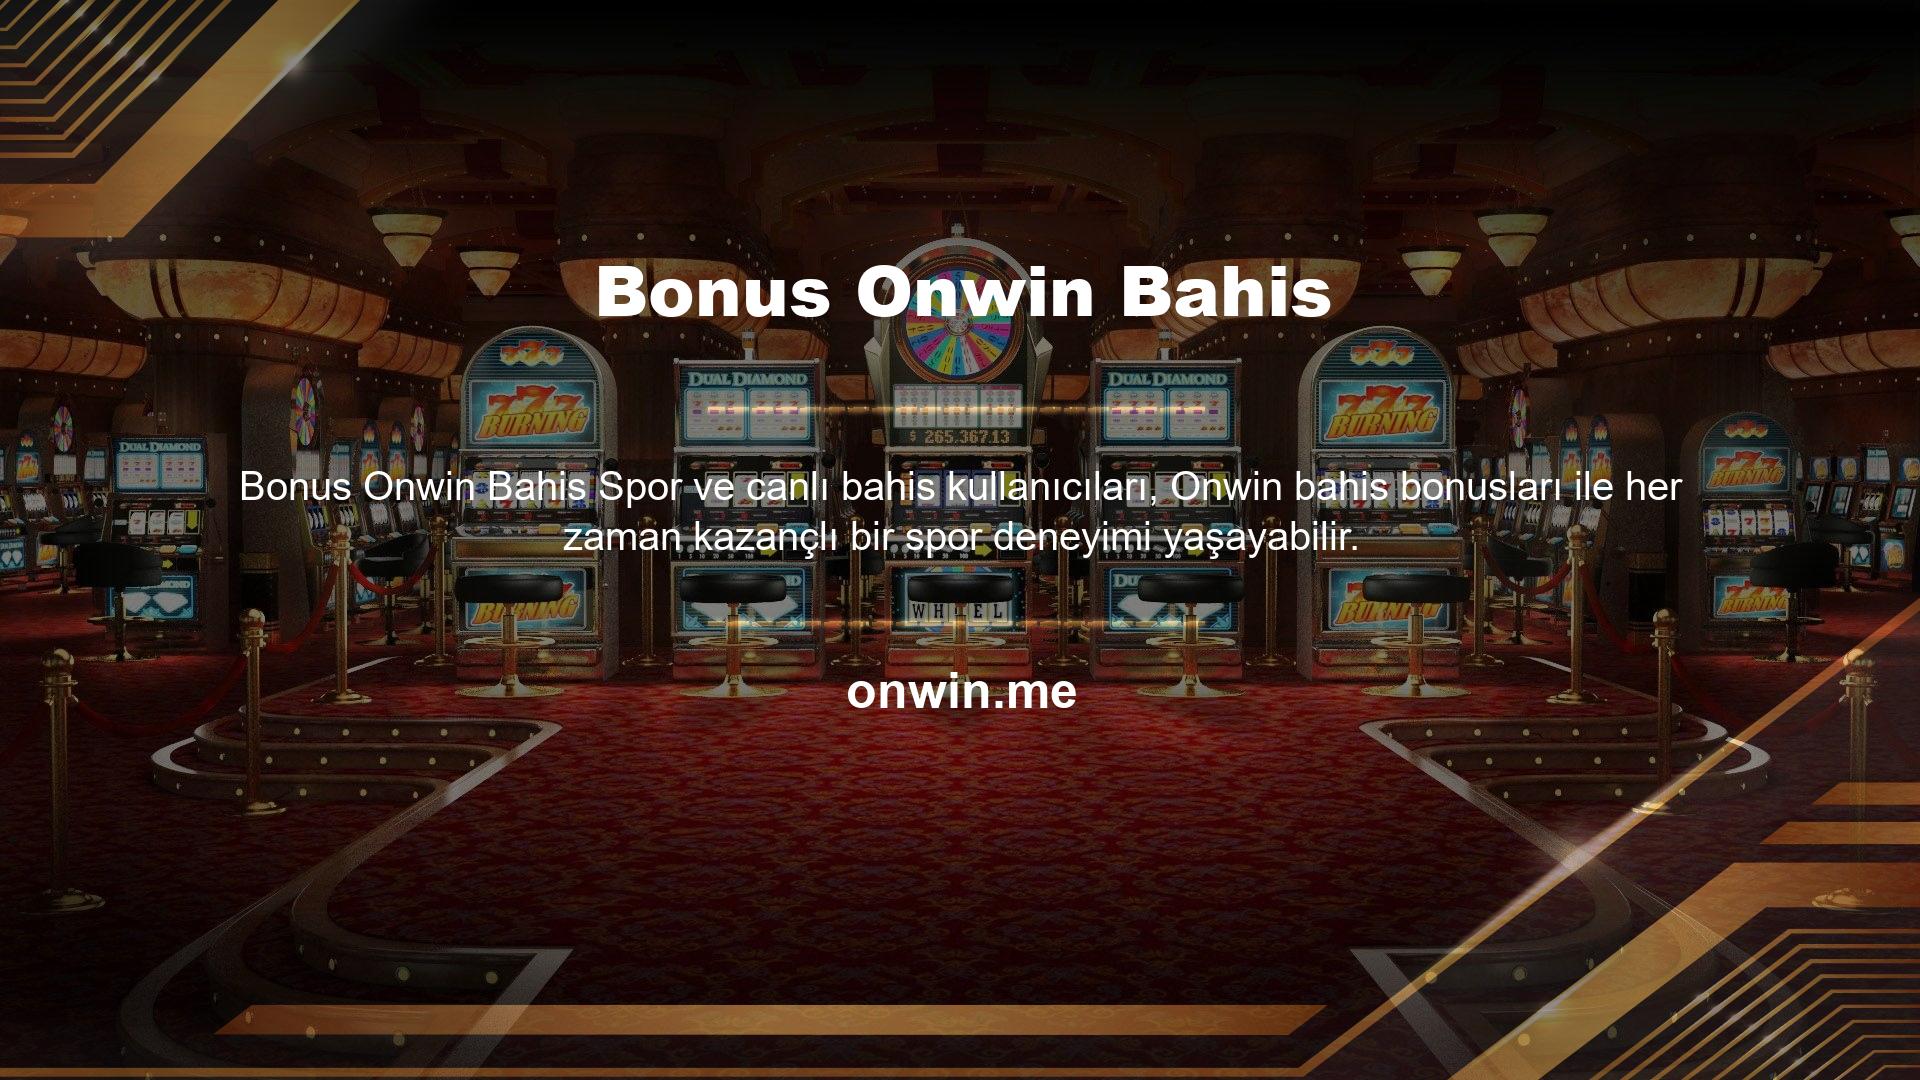 Casino alanında üyelerine birçok farklı bonus ve promosyon sunan Onwin sitesi spor ve canlı bahis alanında da birçok aktivite sunmaktadır